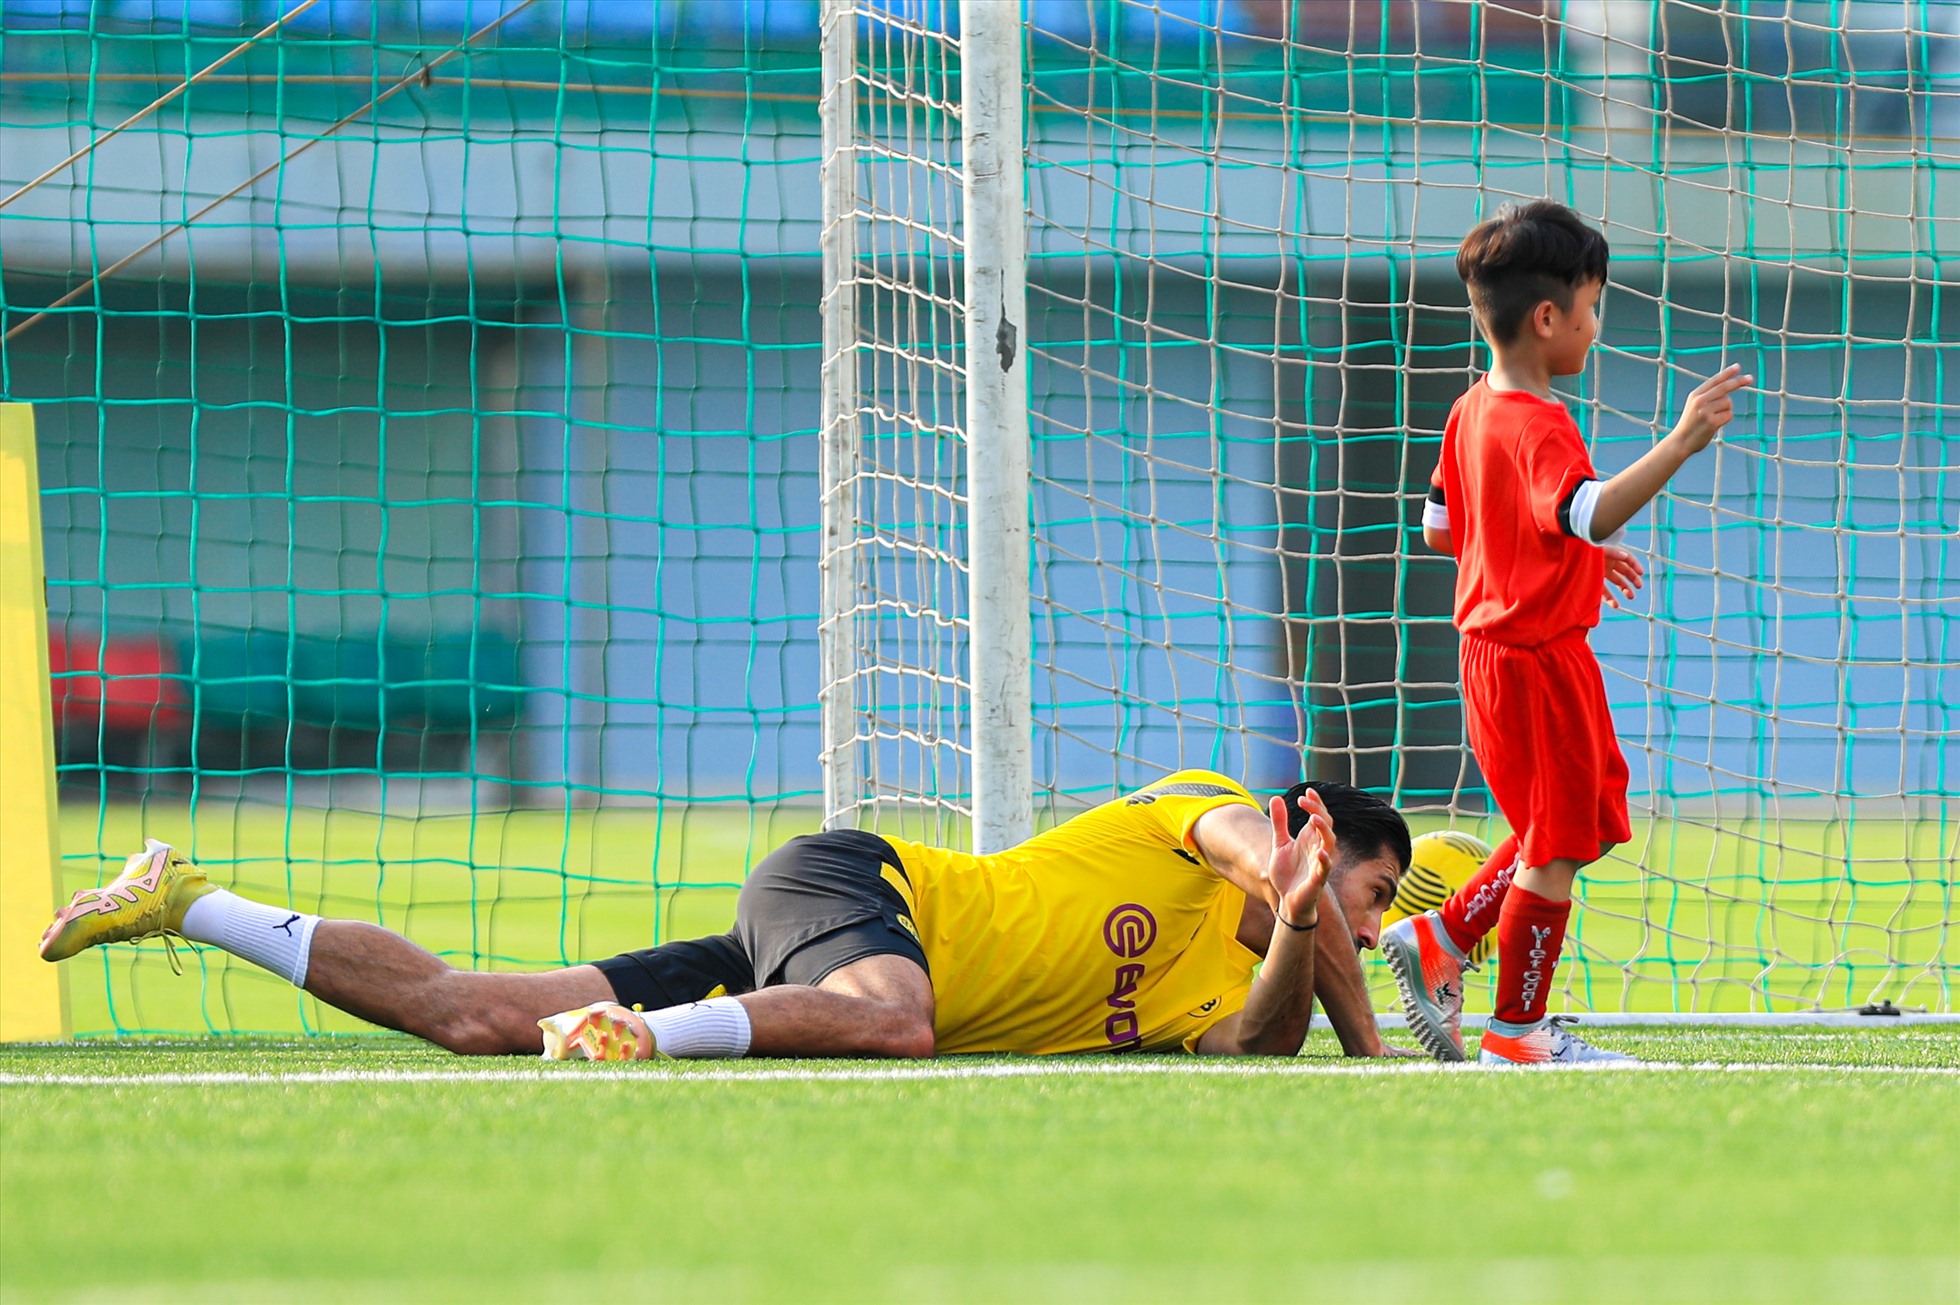 Trận đấu chỉ kéo dài khoảng 10 phút và kết thúc với tỷ số 4-0 nghiêng về các cầu thủ trẻ Việt Nam.